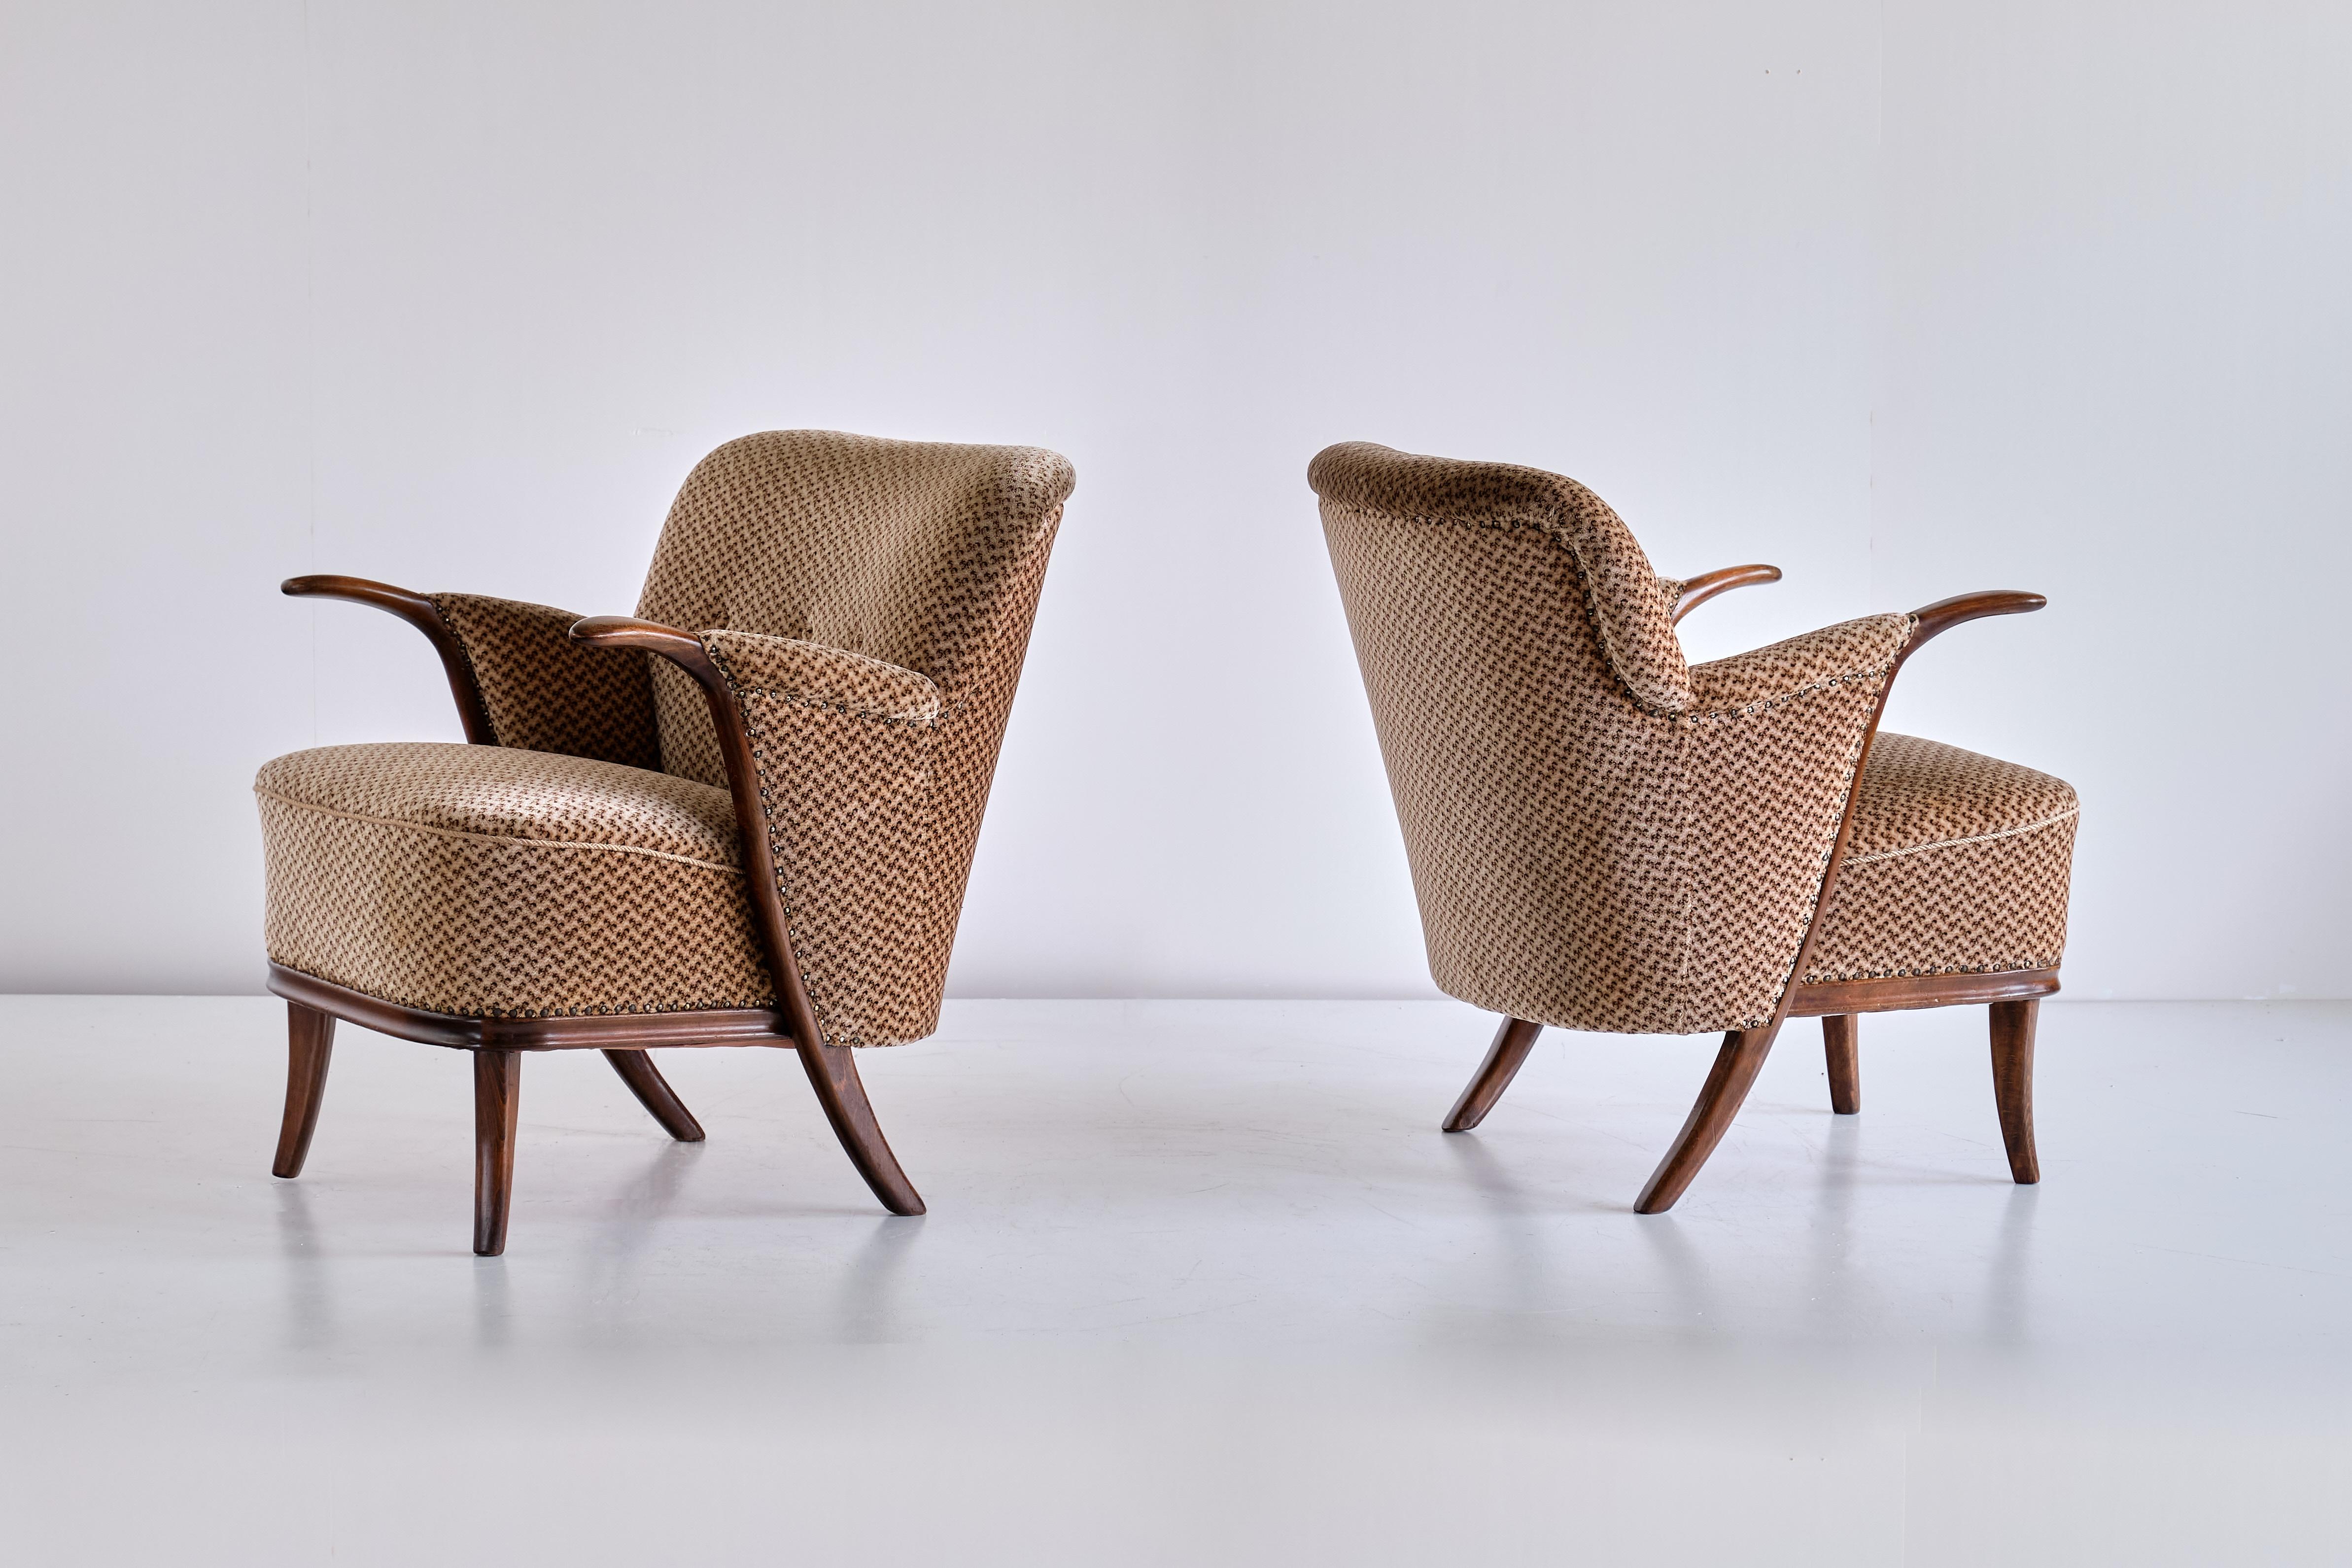 Cette paire de fauteuils rares a été conçue par Adolf Wrenger et produite par sa société à Lippe, en Allemagne, au début des années 1950. Les cadres sont en hêtre massif teinté, avec des accoudoirs sculpturaux reliés par une ligne courbe aux pieds